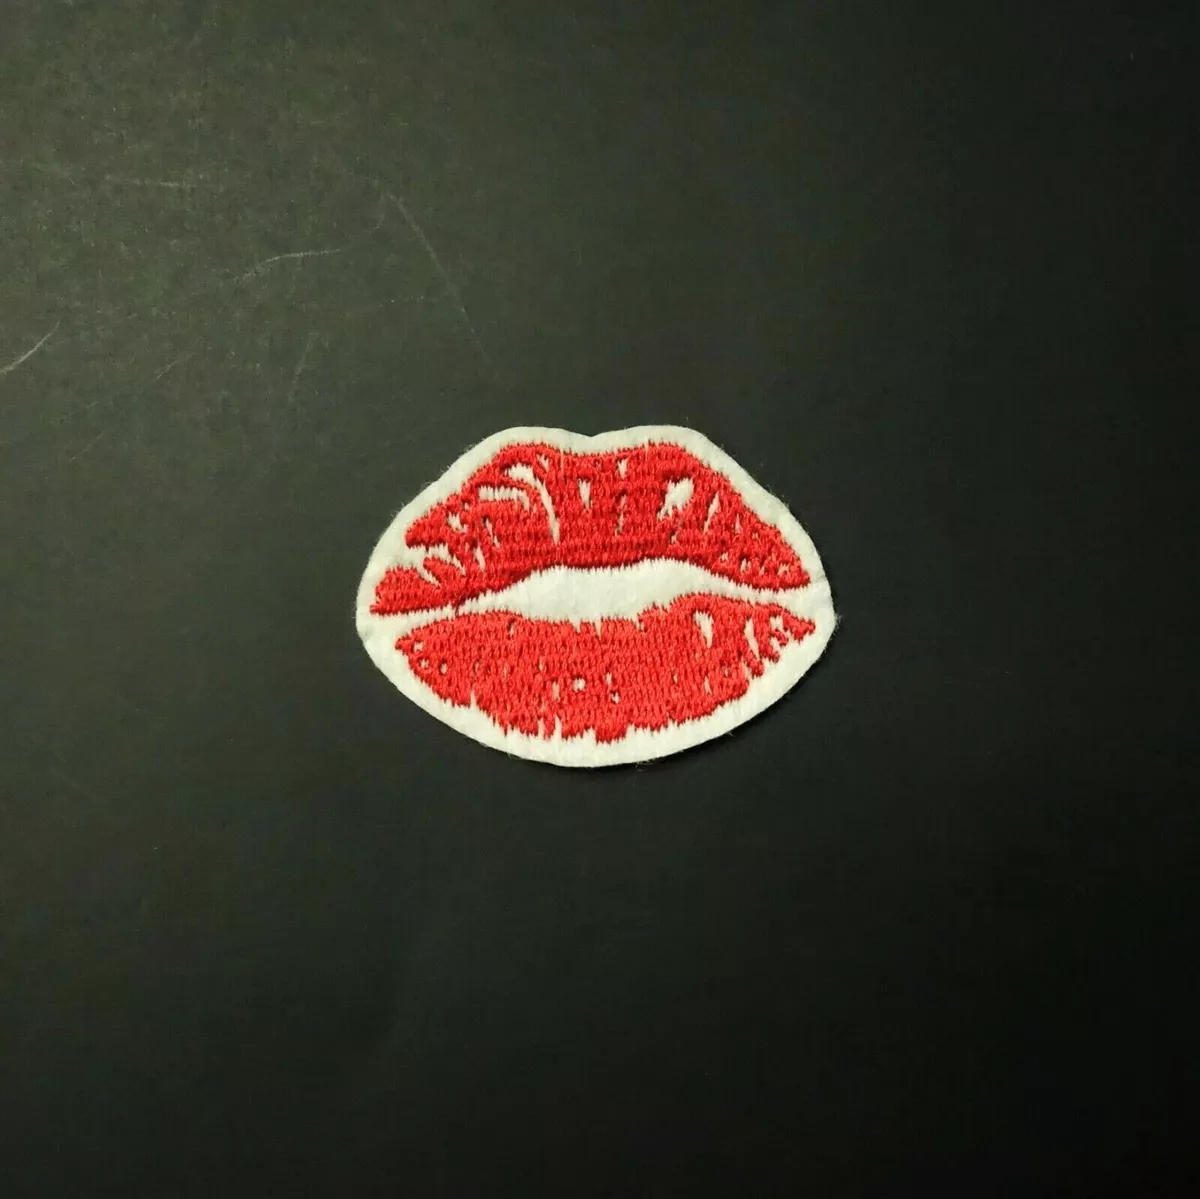 cory rousseau add red lips kiss mark photo